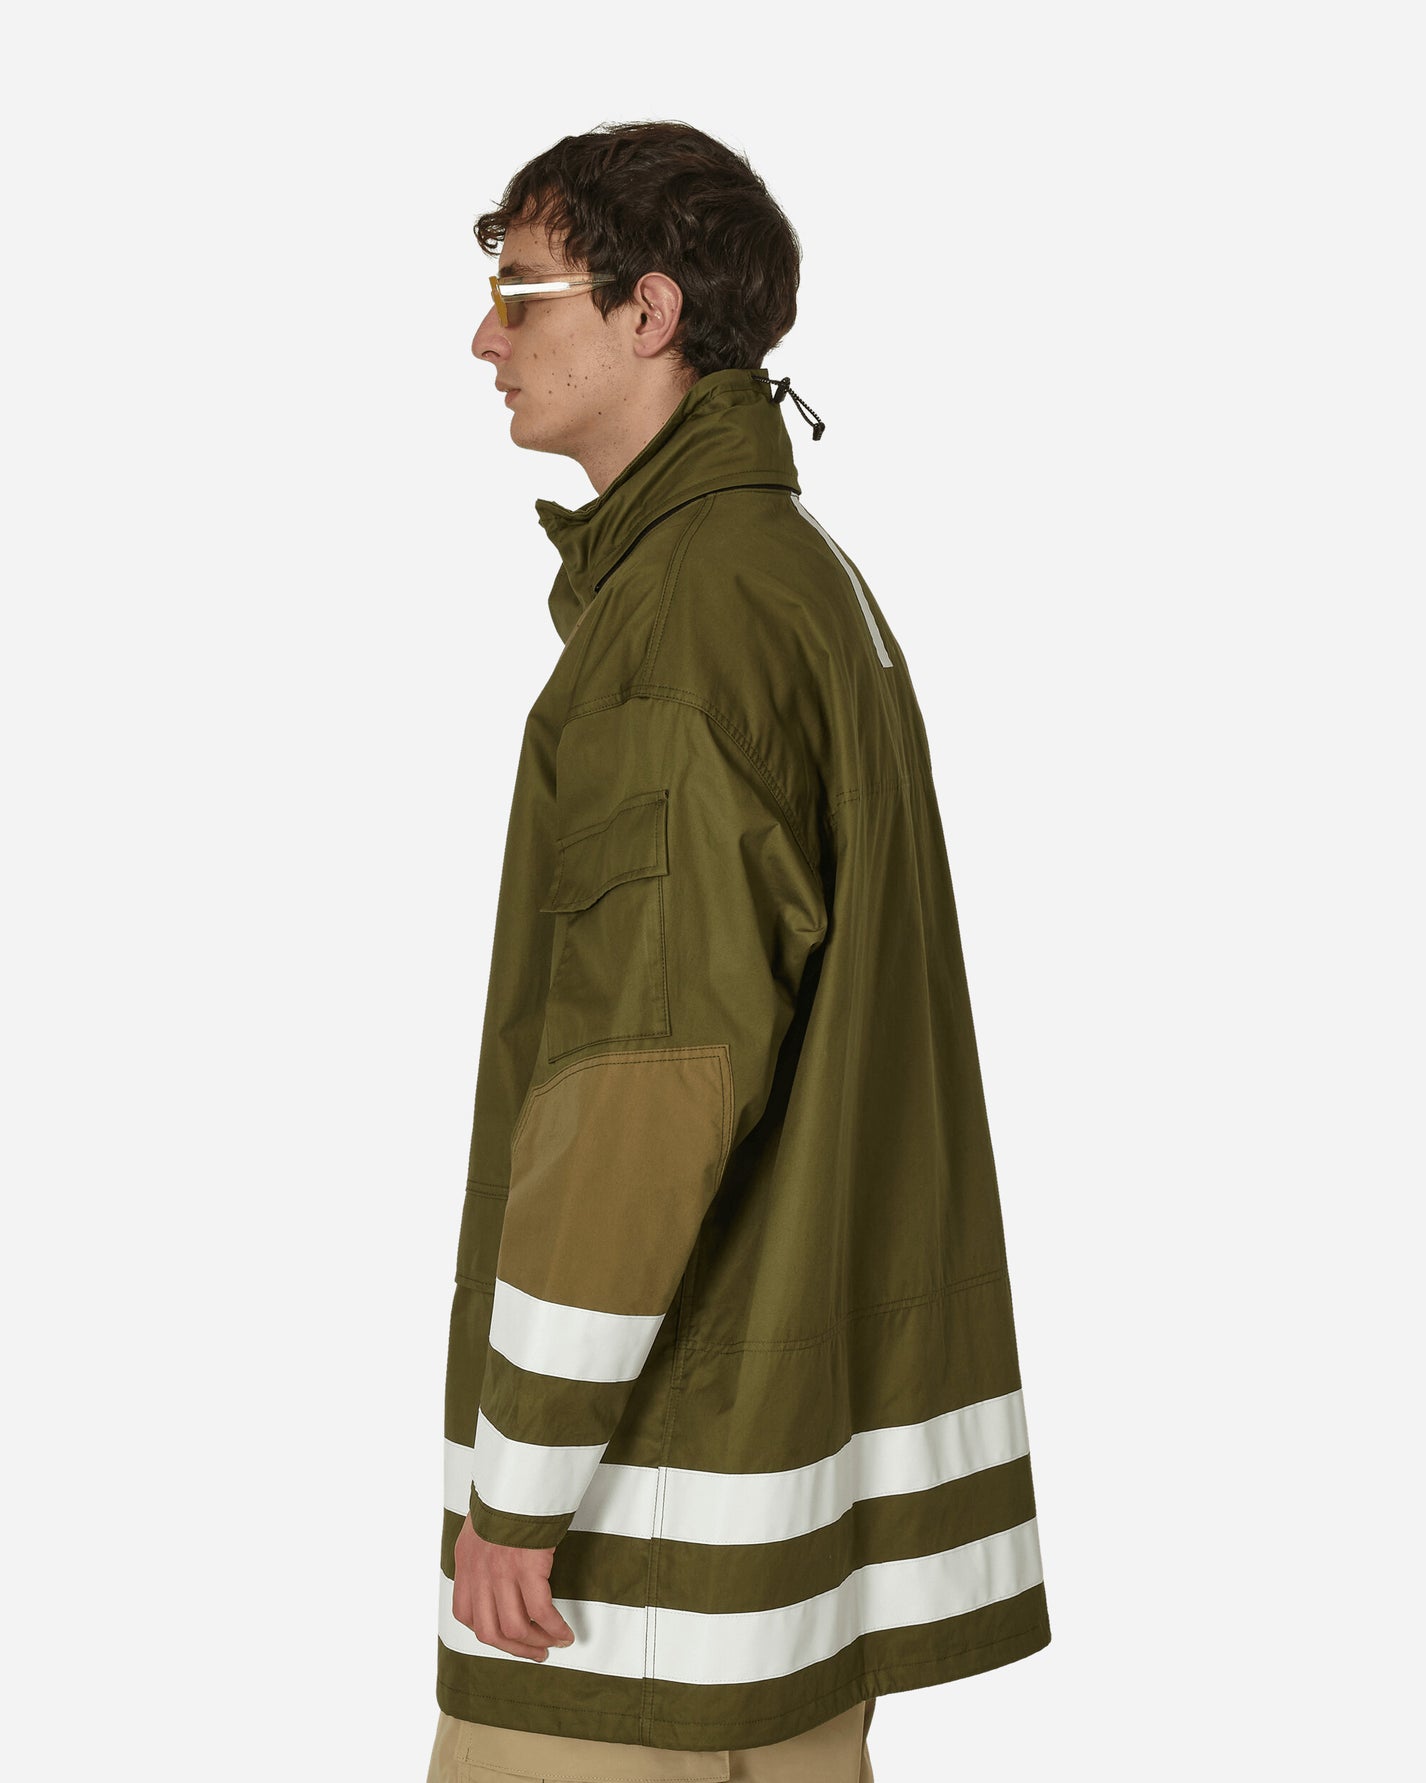 Comme Des Garçons Homme Men'S Coat Khaki Coats and Jackets Coats HM-C005-051 2